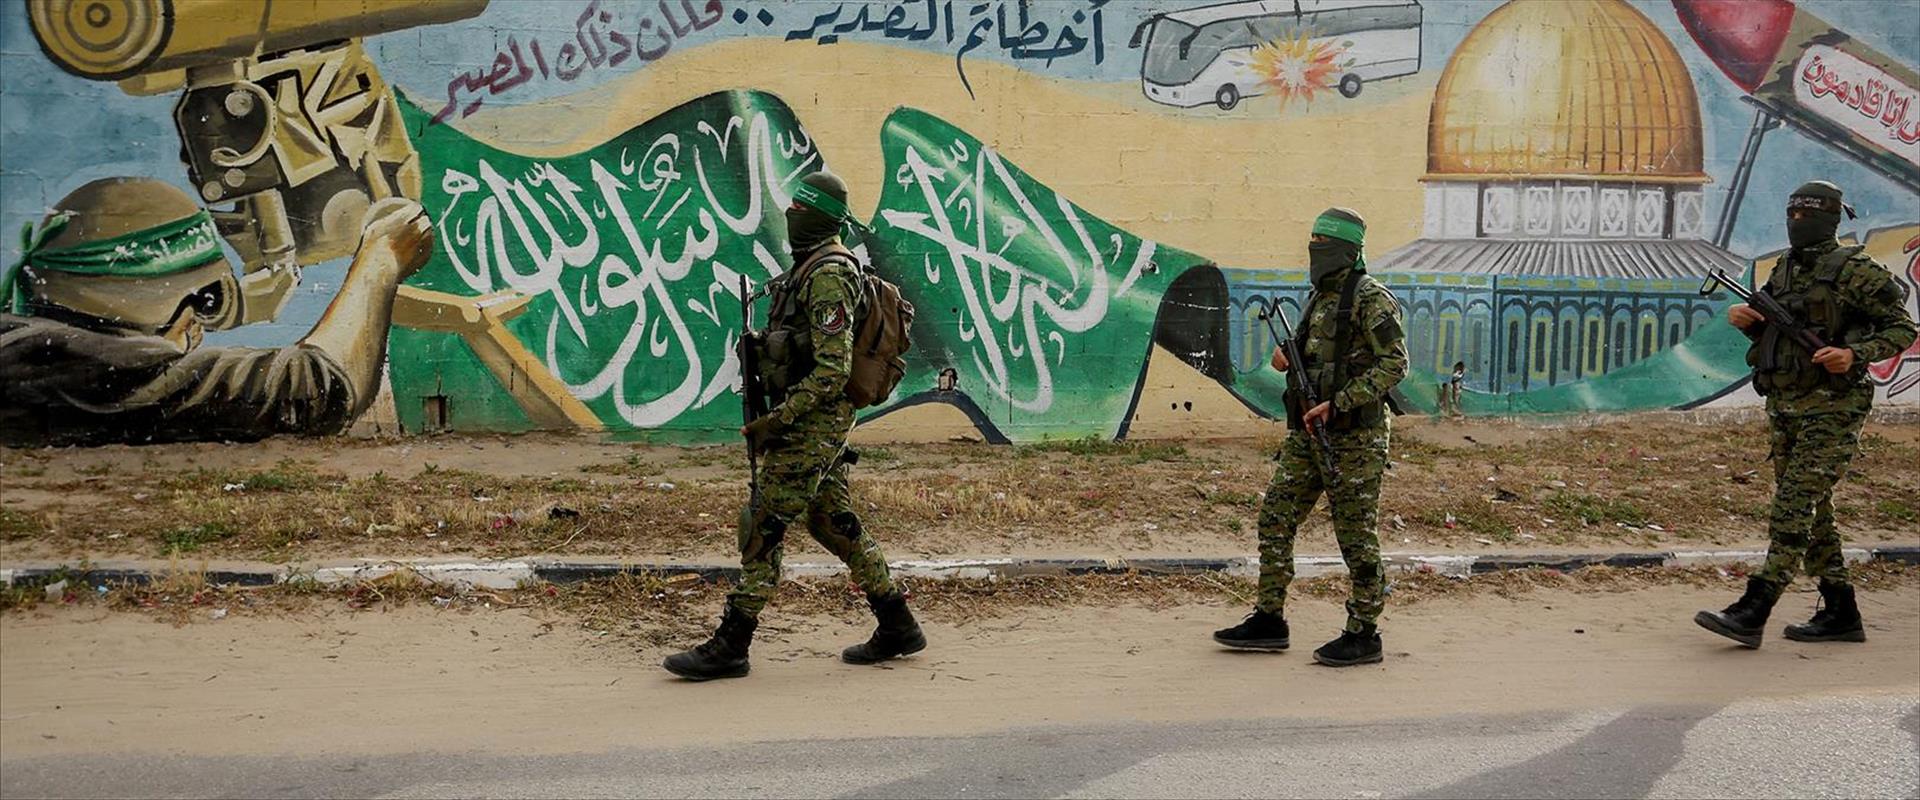 פעילי הזרוע הצבאית של חמאס בעזה, בשנה שעברה